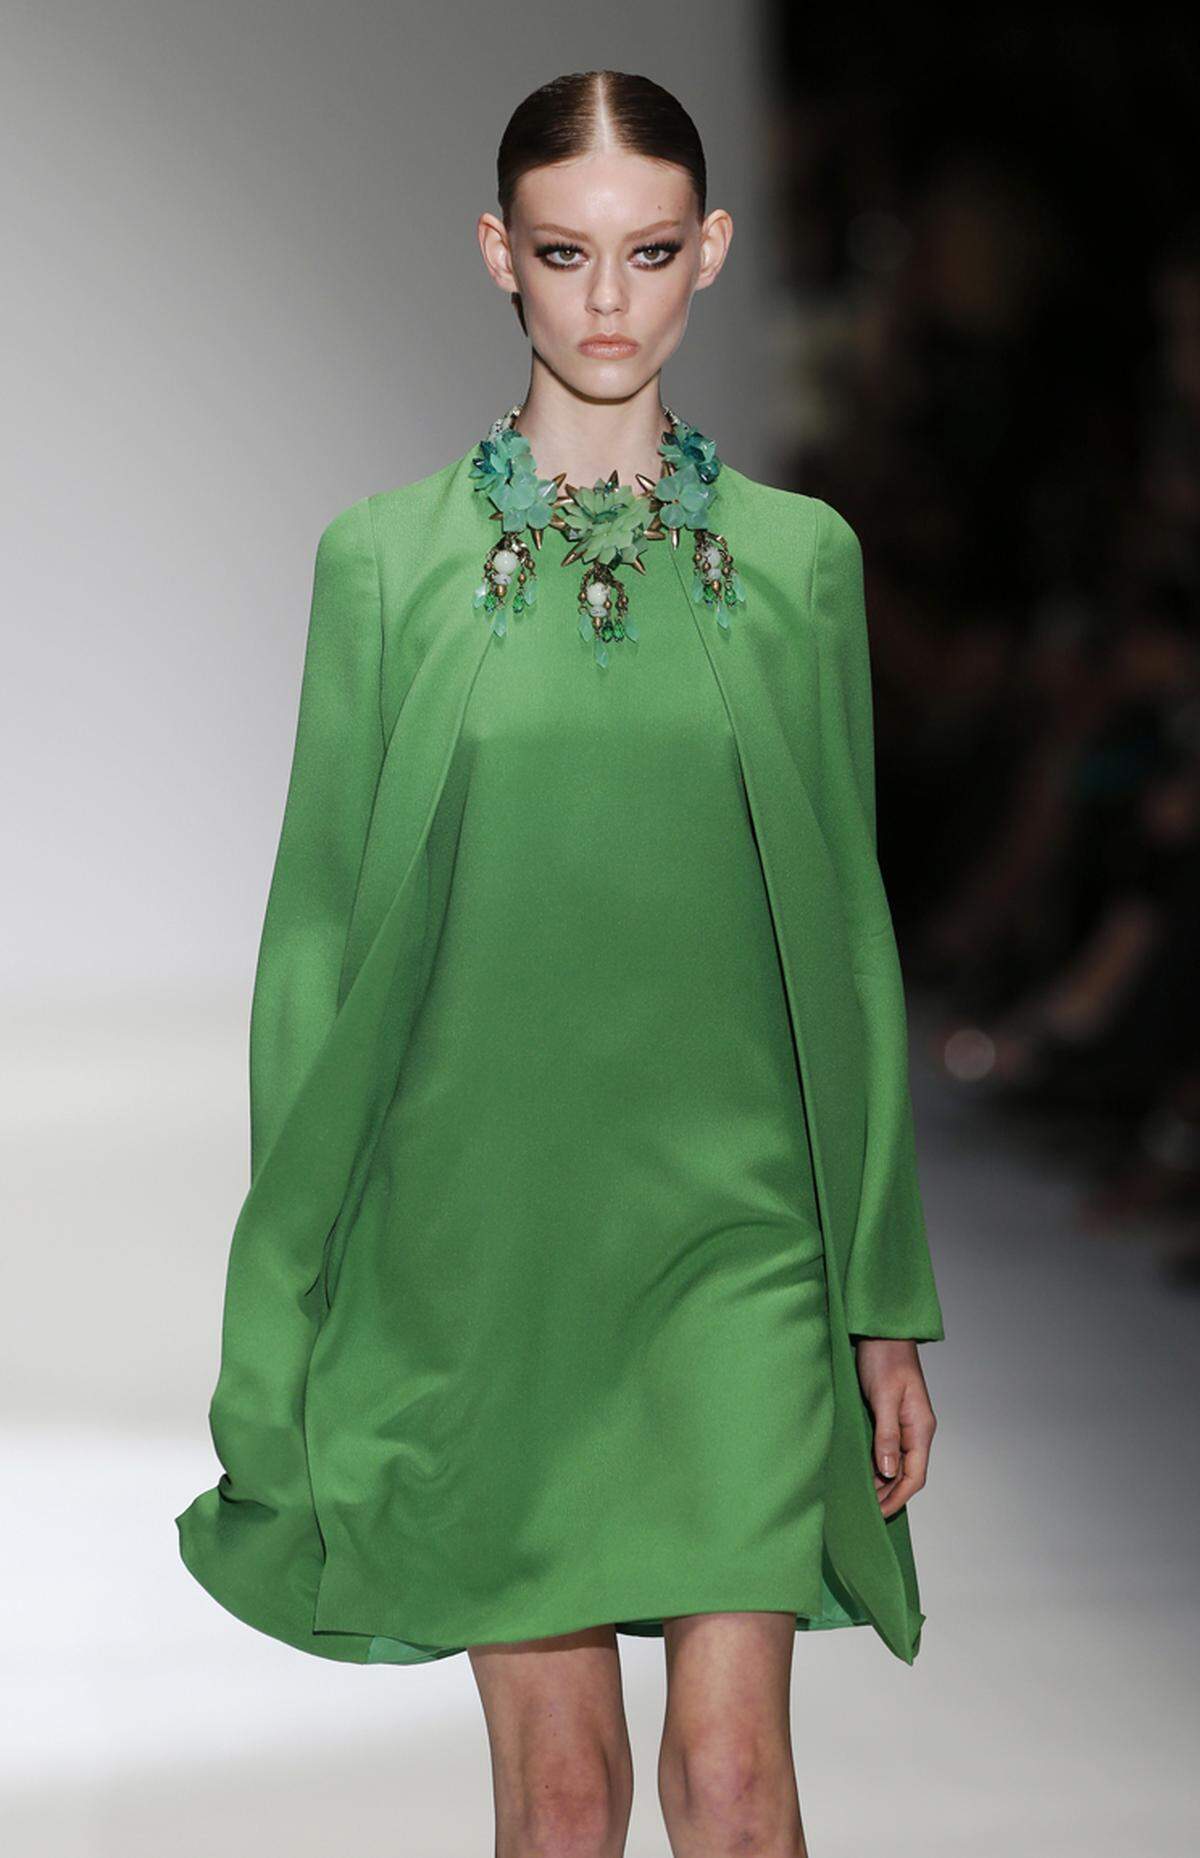 KAUFEN: Smaragdgrün wurde von Pantone zur "Farbe des Jahres 2013) gewählt. Wer schon Outftis in der neuen Trendfarbe findet, kann diese besten Gewissens kaufen (Gucci).